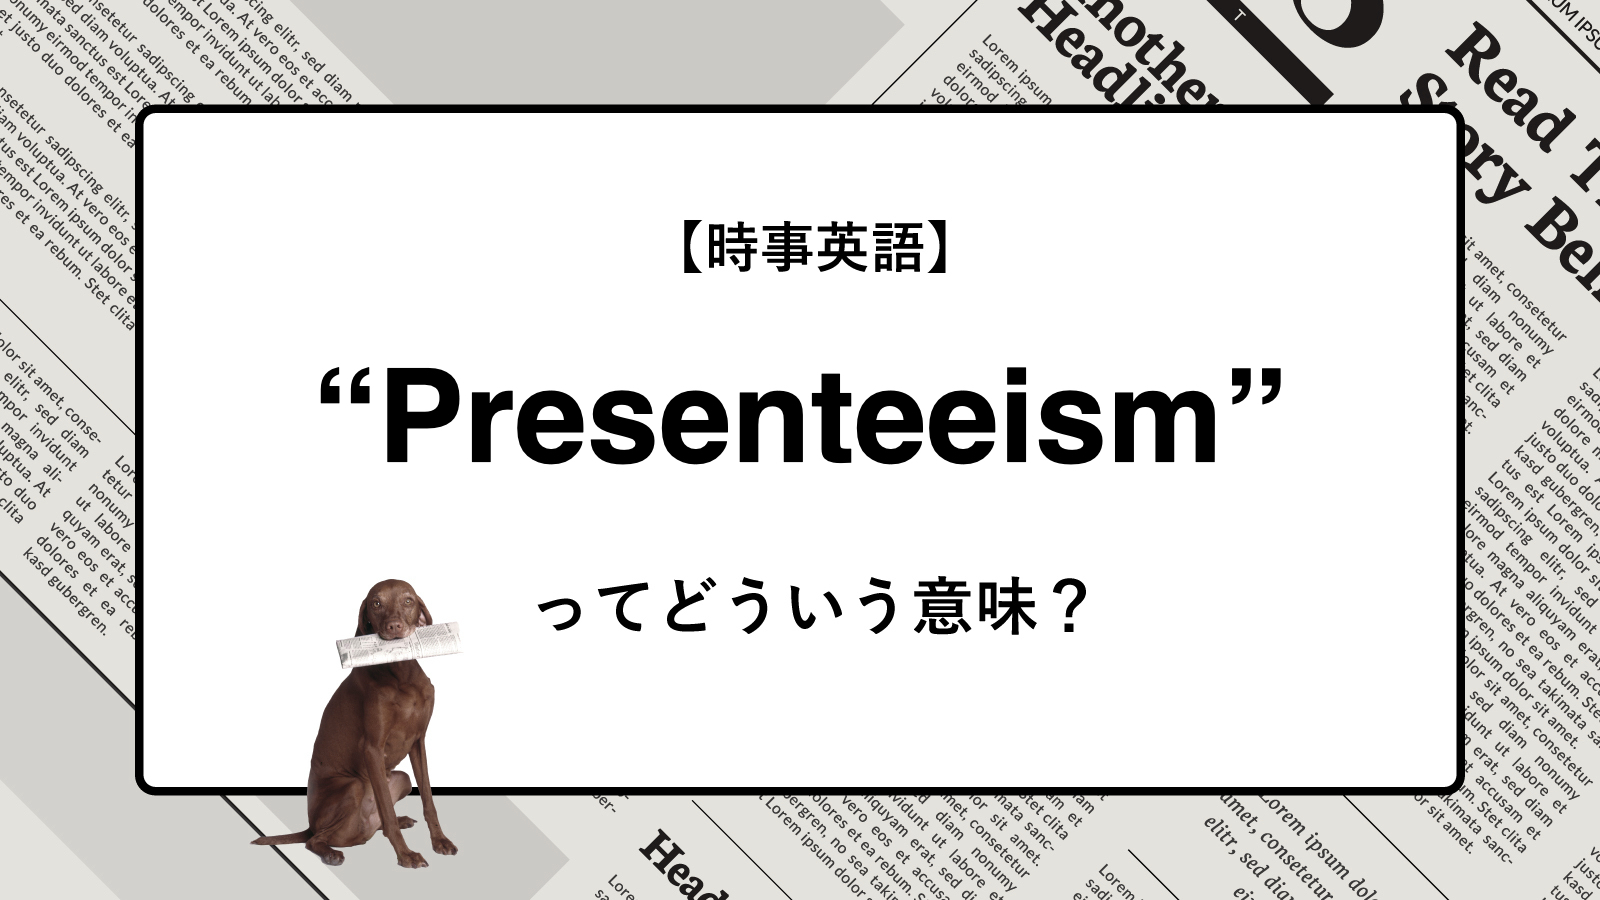 【時事英語】“Presenteeism” ってどういう意味？ | ニュースの「キーワード」で語彙力を身につける